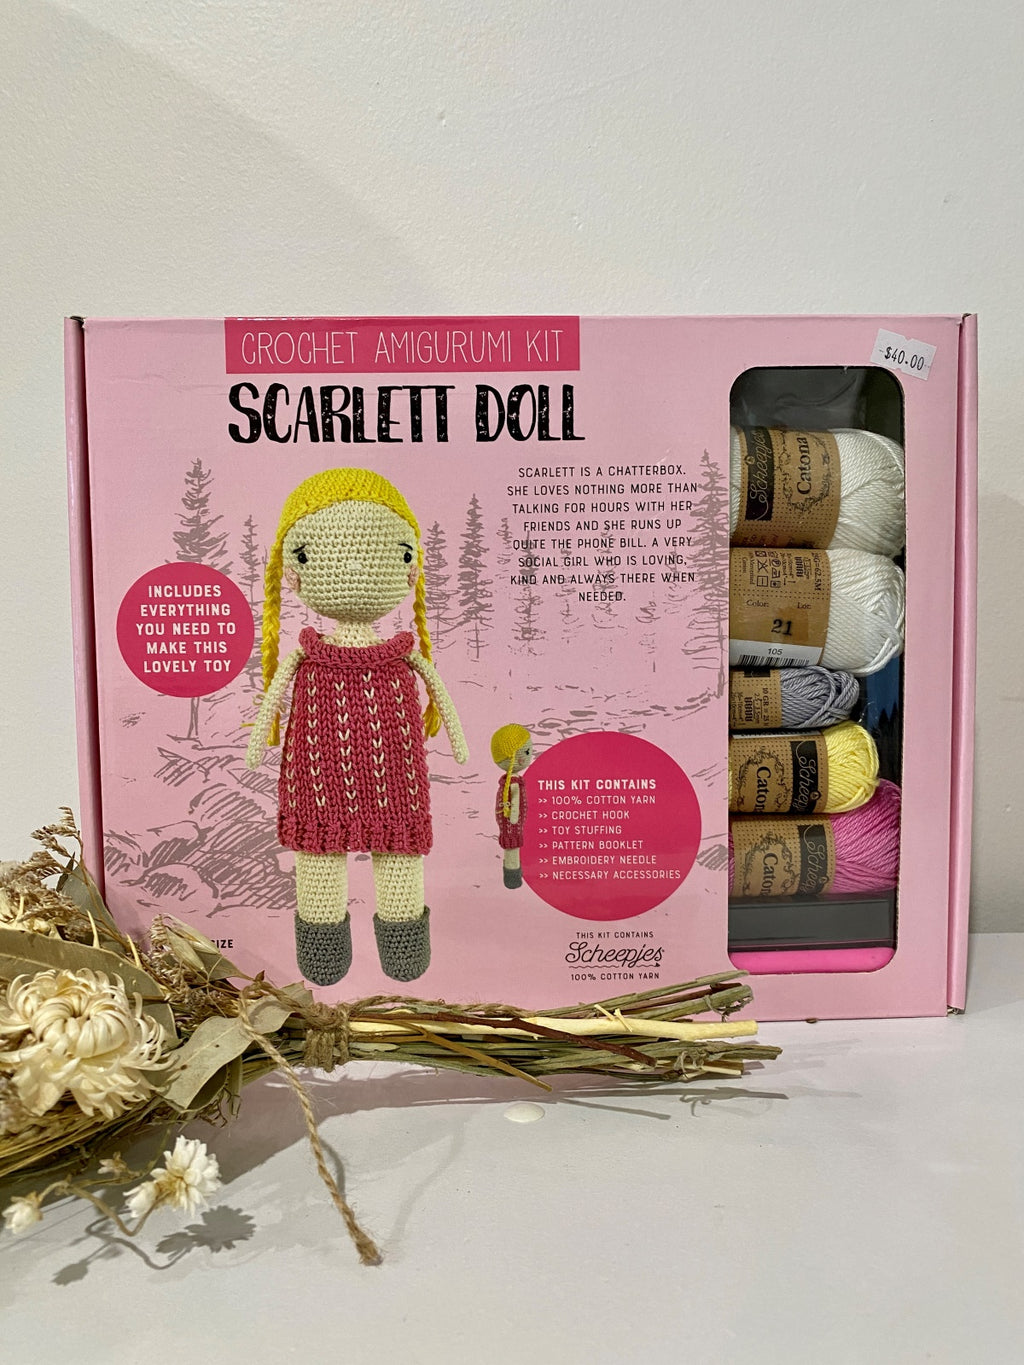 Tuva Crochet amigurumi kit Scarlett Doll Scheepjes Tuva crochet